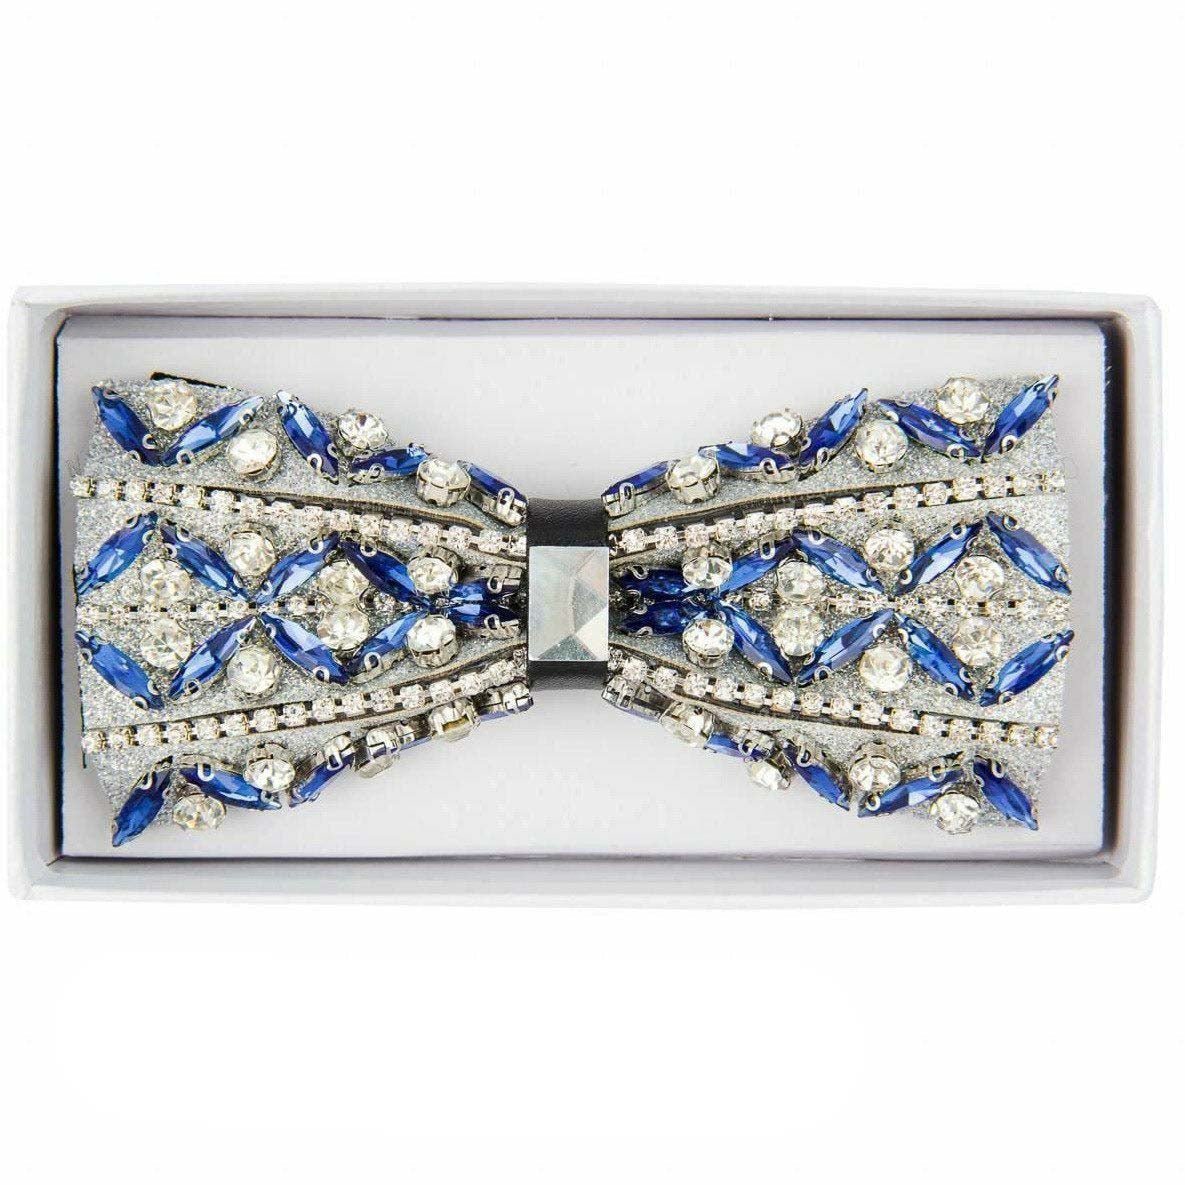 Vittorio Farina Jeweled Bow Tie by Classy Cufflinks - bj-011 - Classy Cufflinks